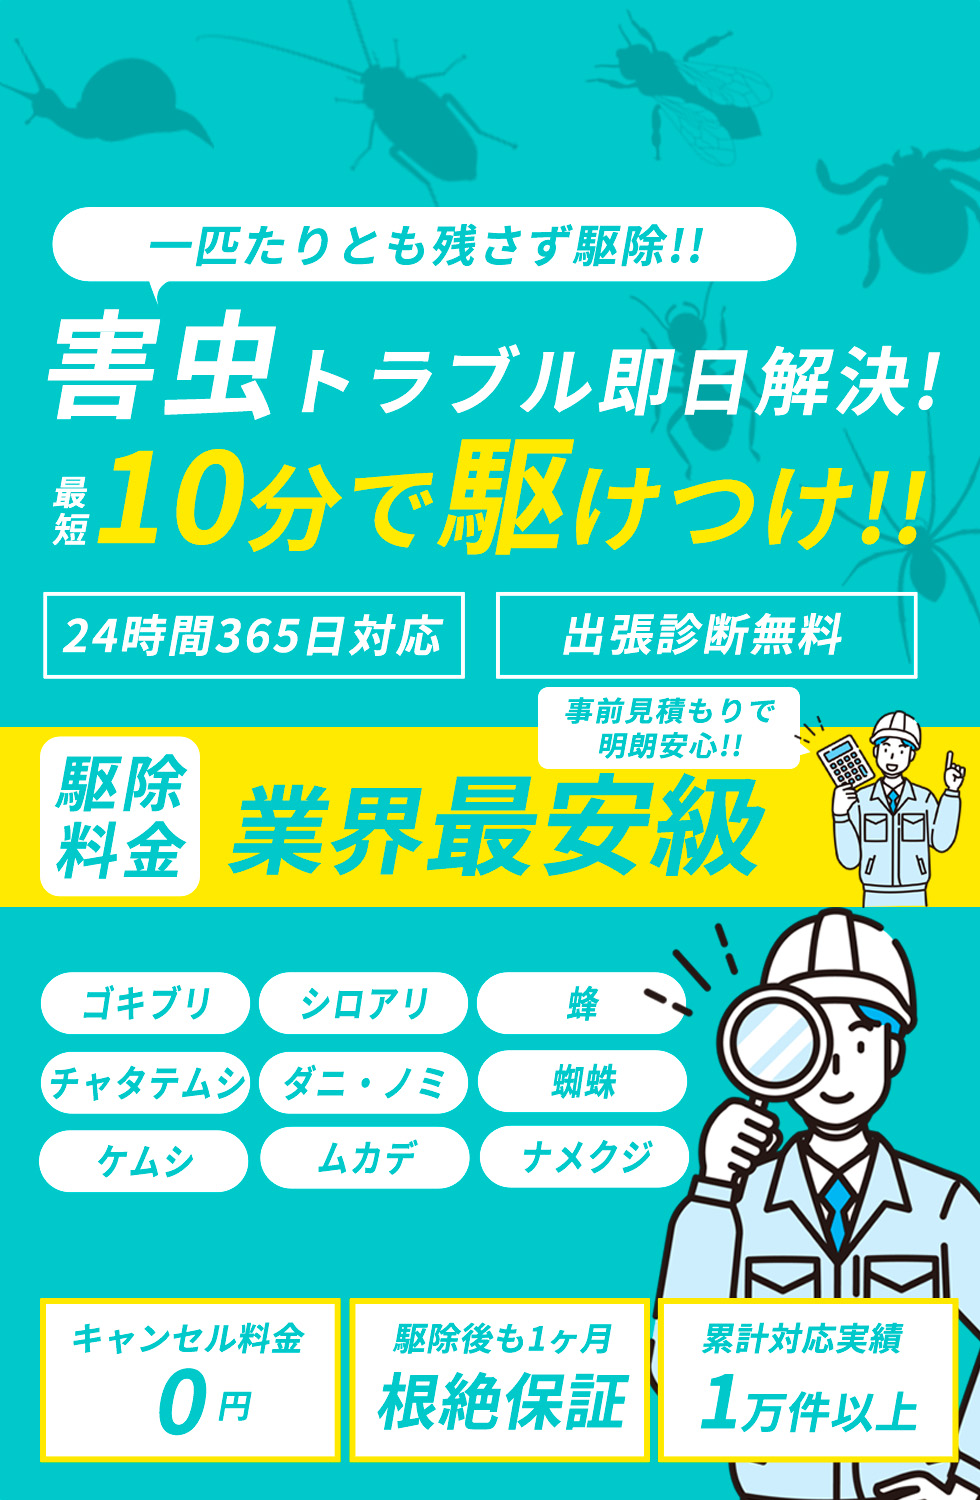 迷惑な害虫119番 即日害虫駆除 業界最安級 ¥3,980〜